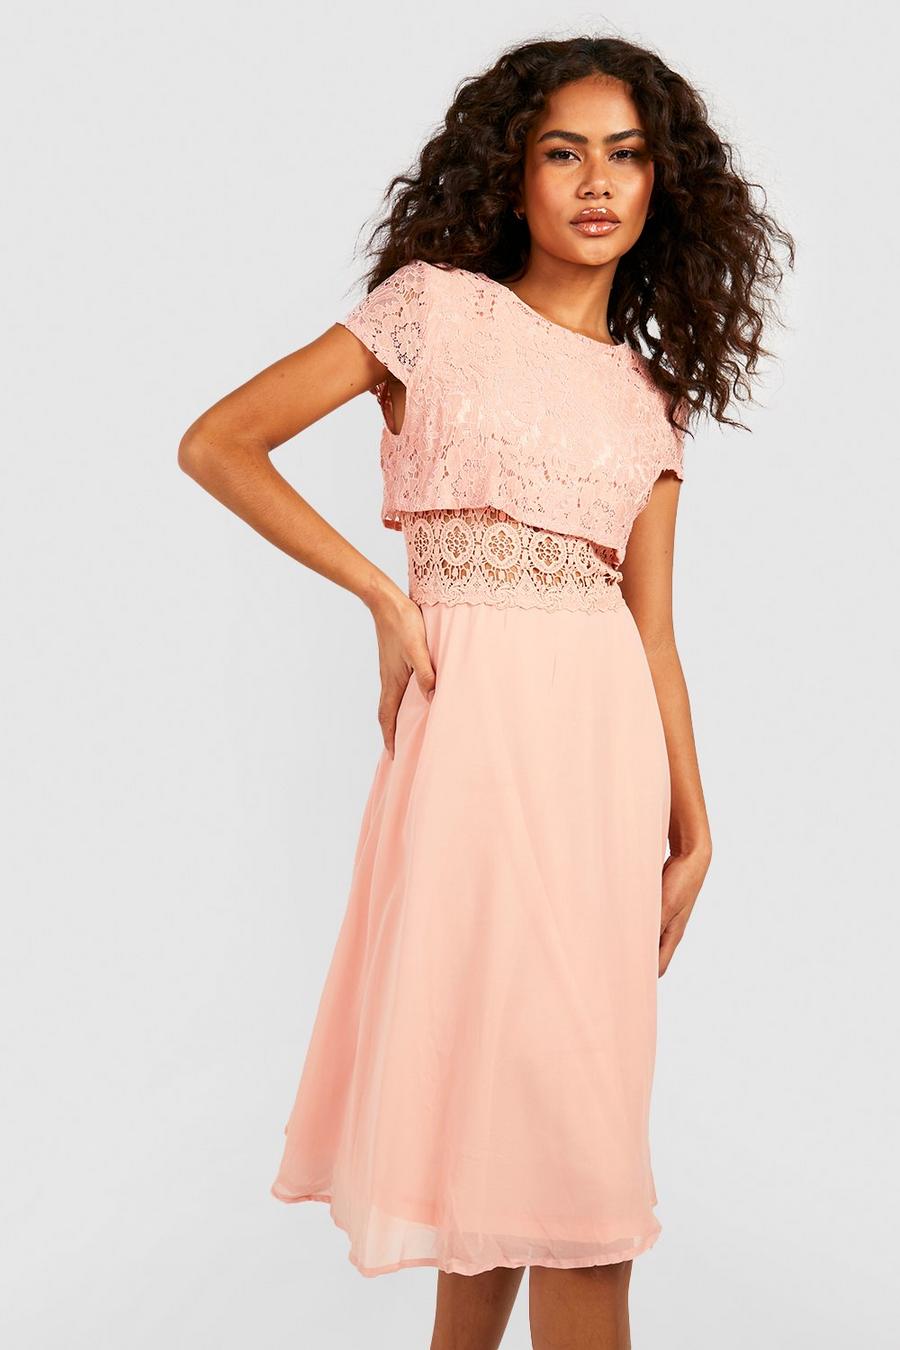 סמוק rosa שמלת סקייטר מבד שיפון עם טופ תחרה